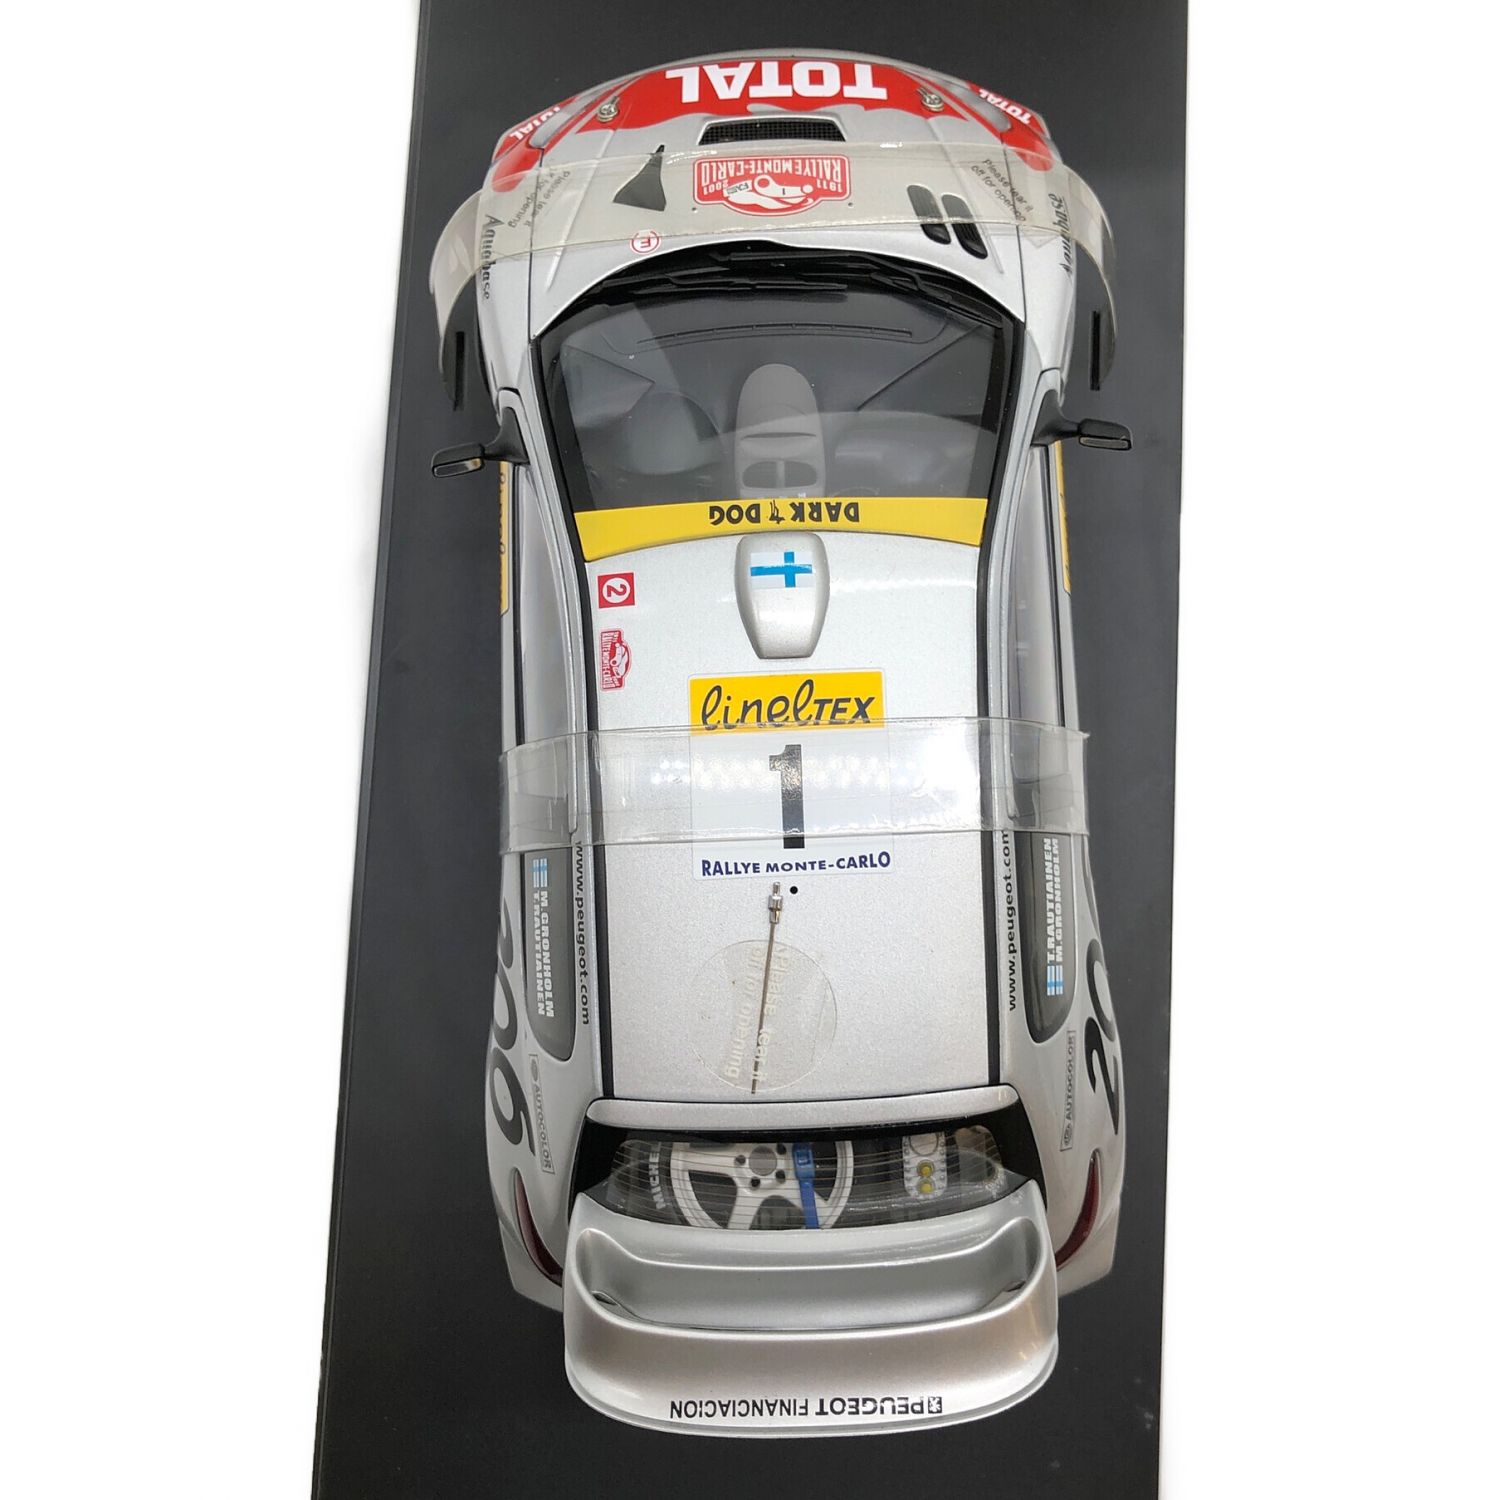 AUTOart (オートアート) モデルカー 1:18 PEUGEOT 206 WRC｜トレファク